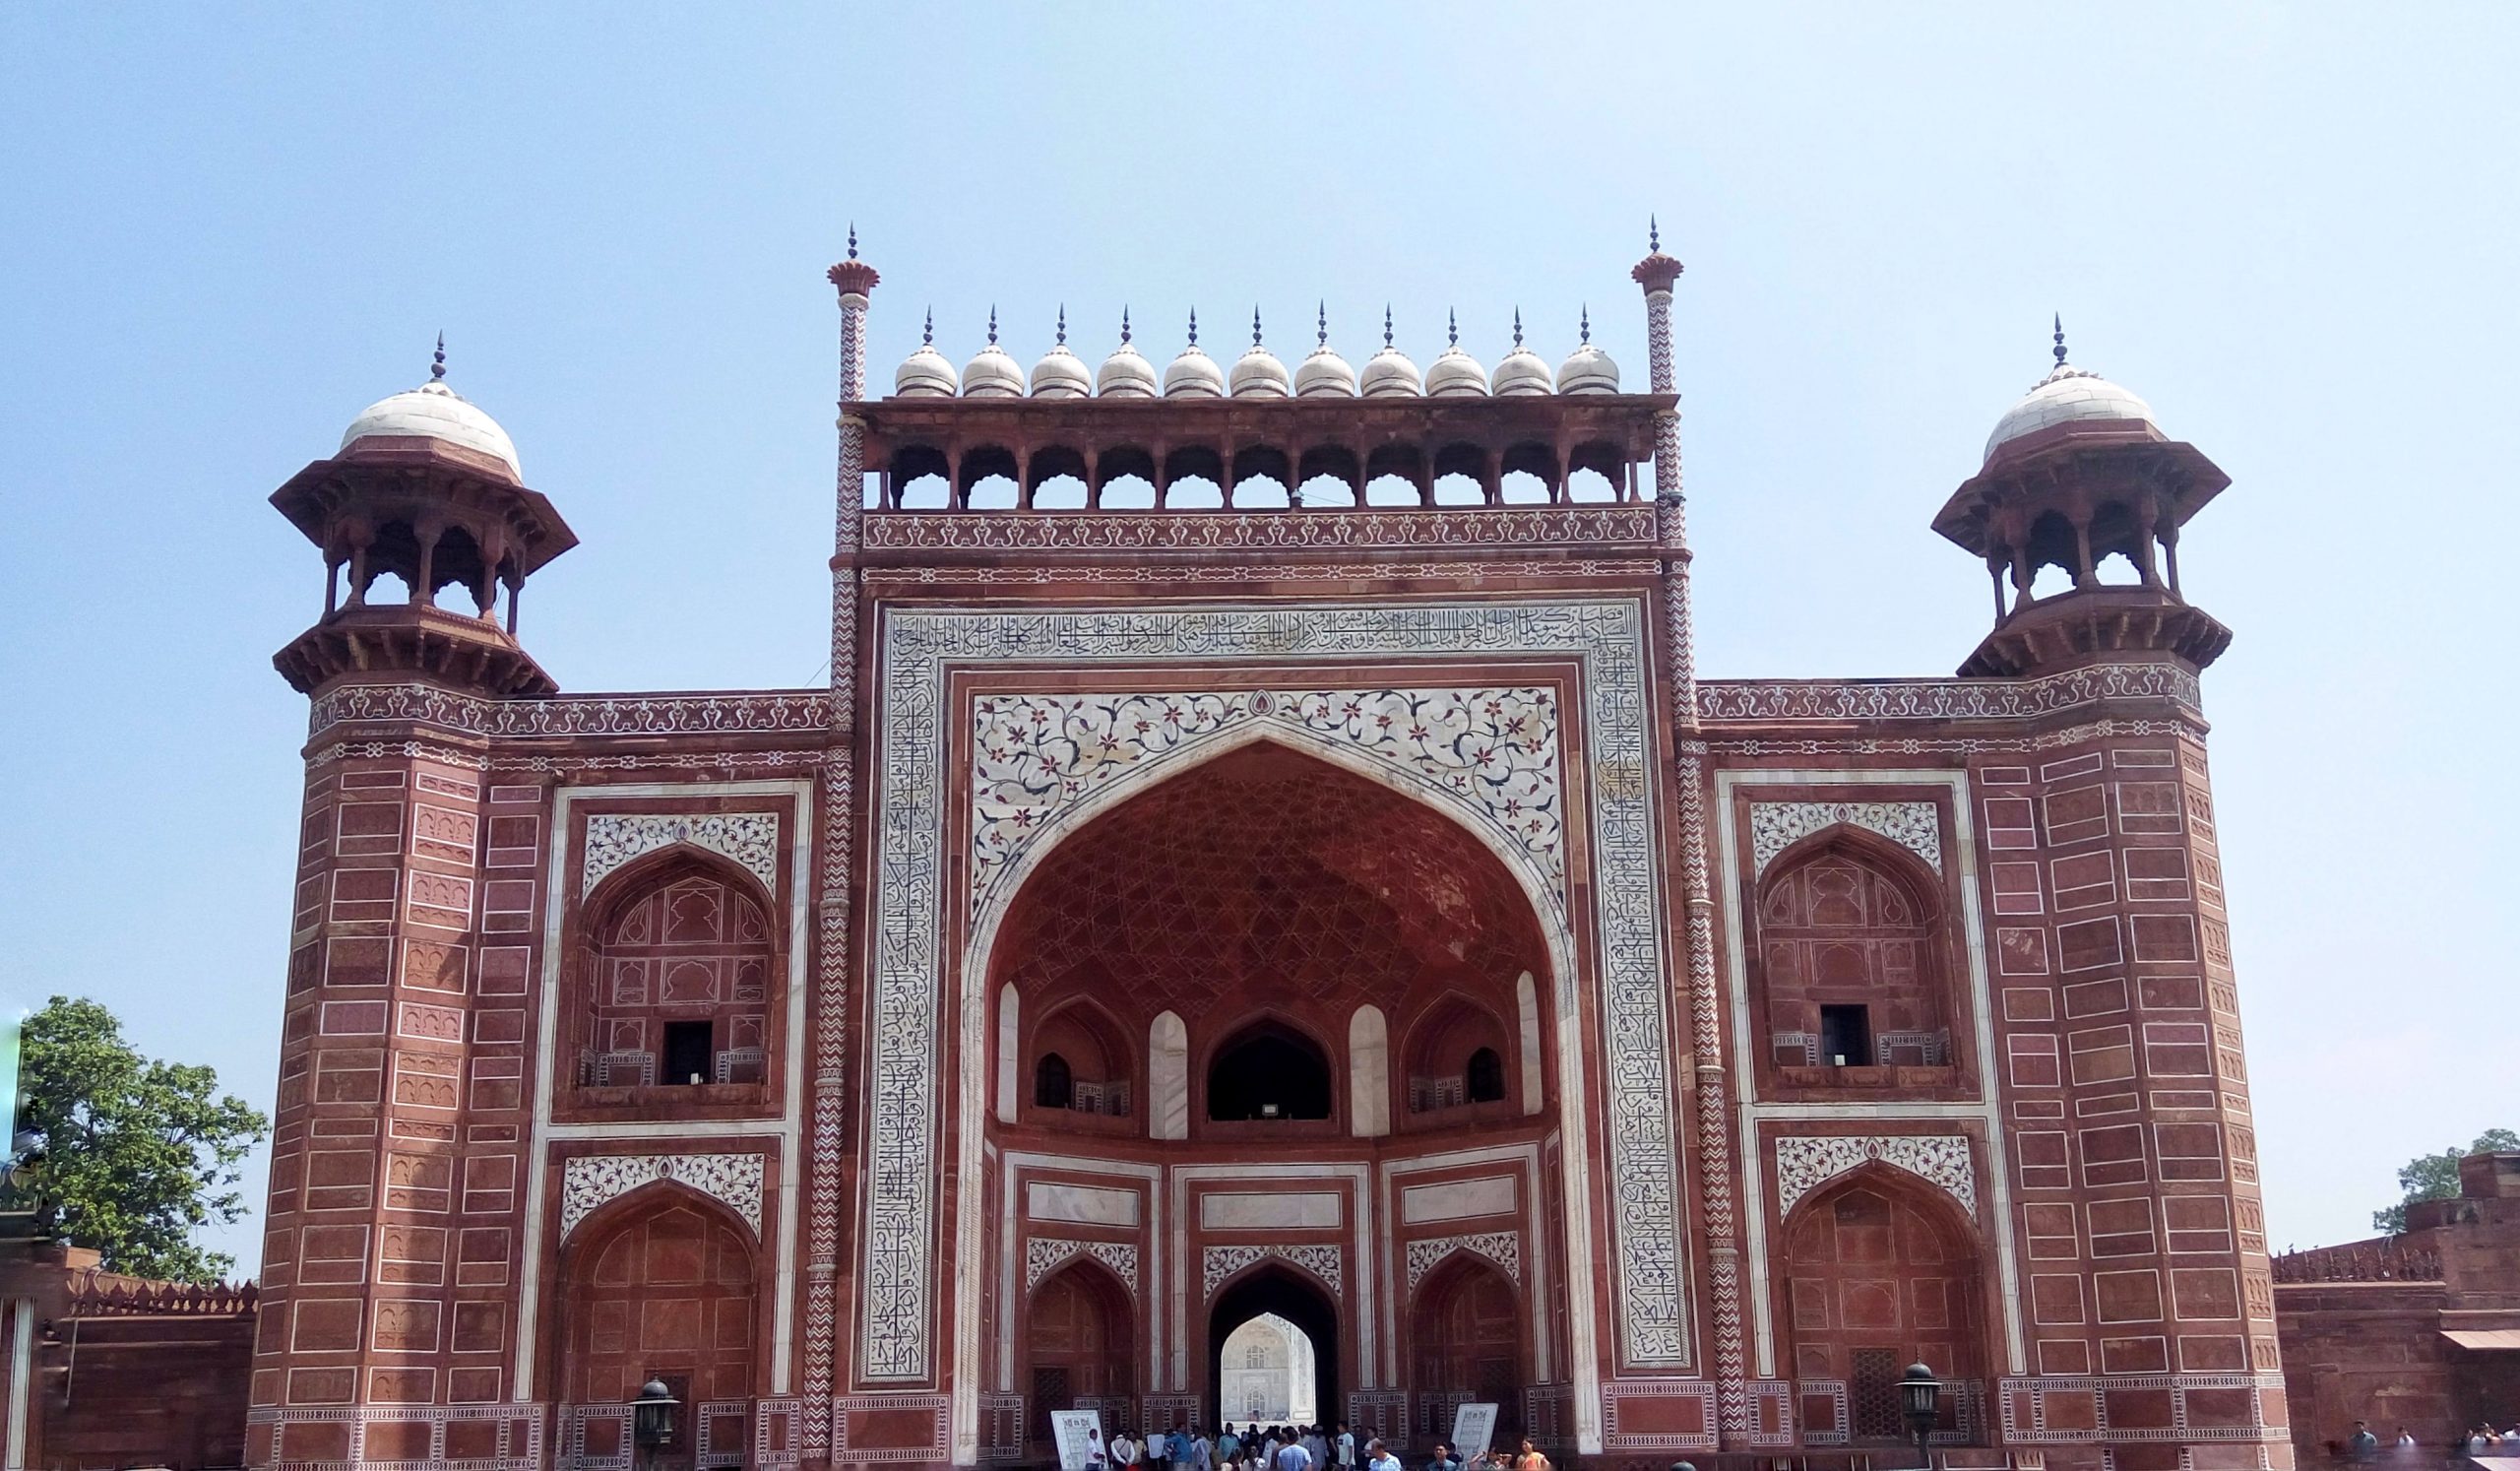 Entry gate of Taj Mahal in Agra